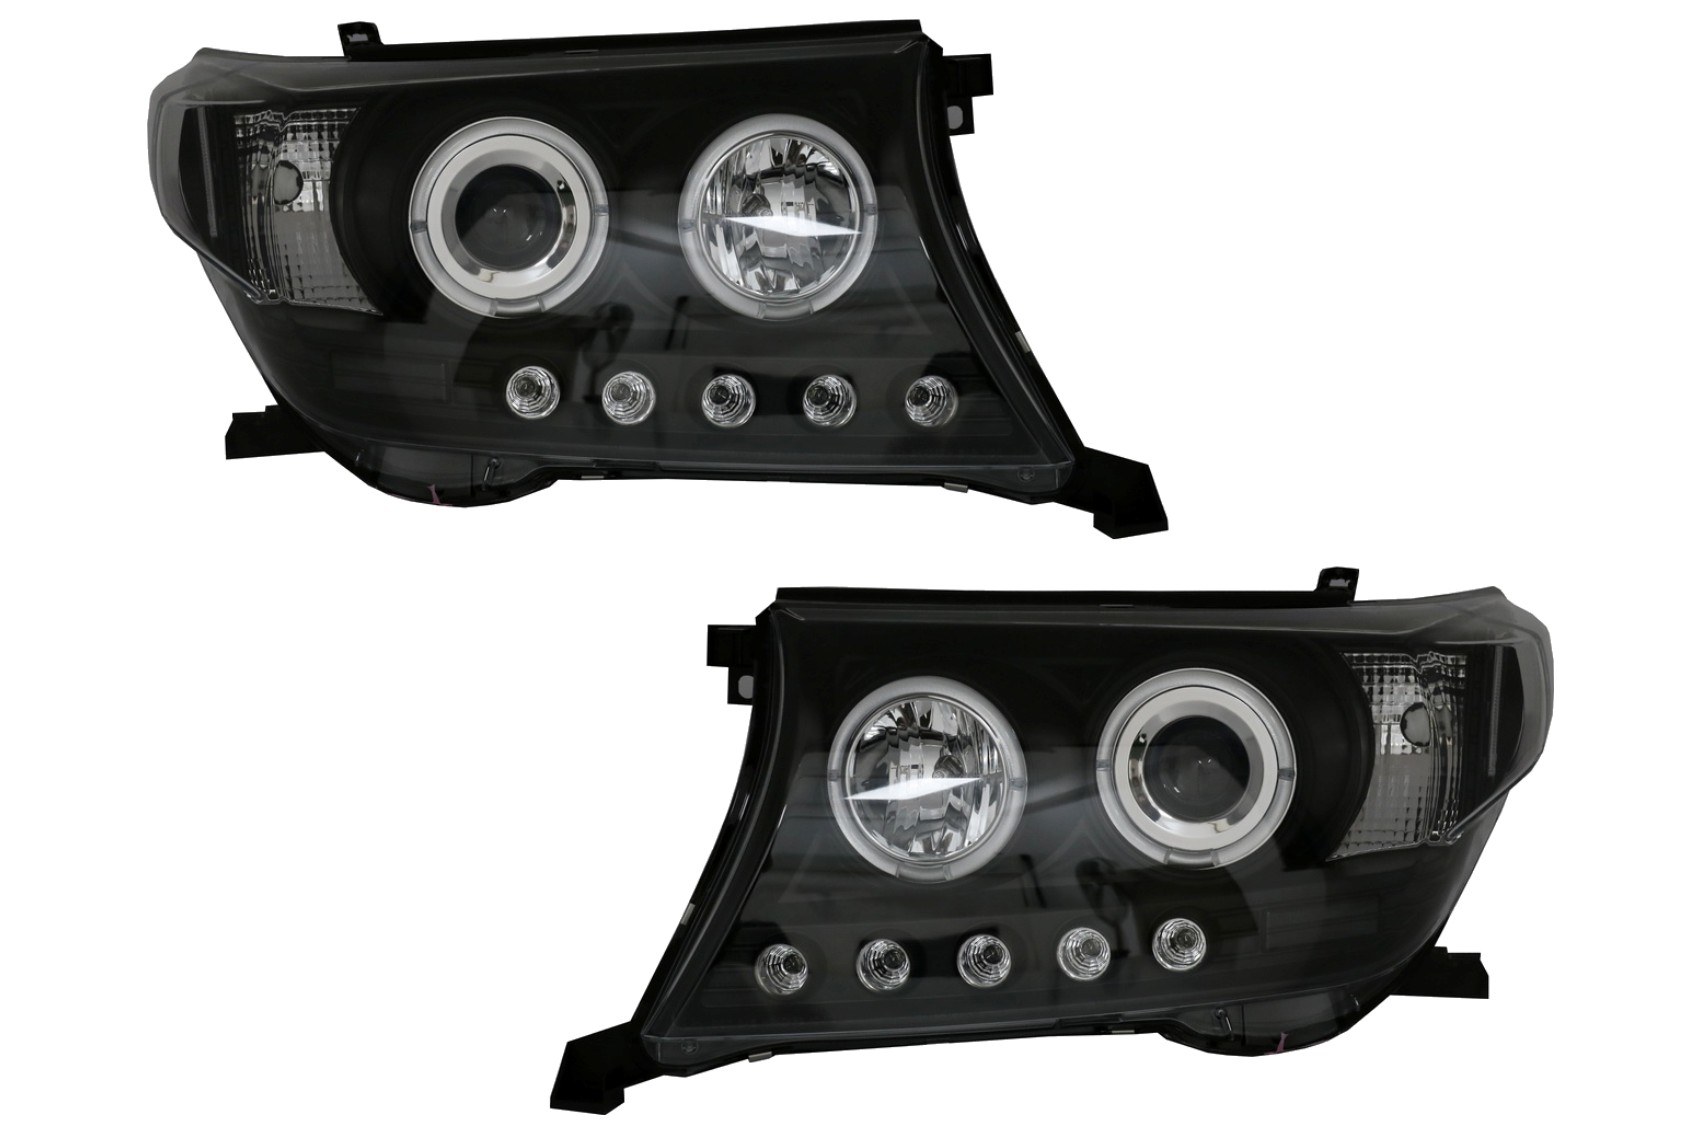 A Toyota Land Cruiser FJ200 (2008-2012) típushoz használható LED DRL fényszórók Facelift 2012 Black Modelre frissítés